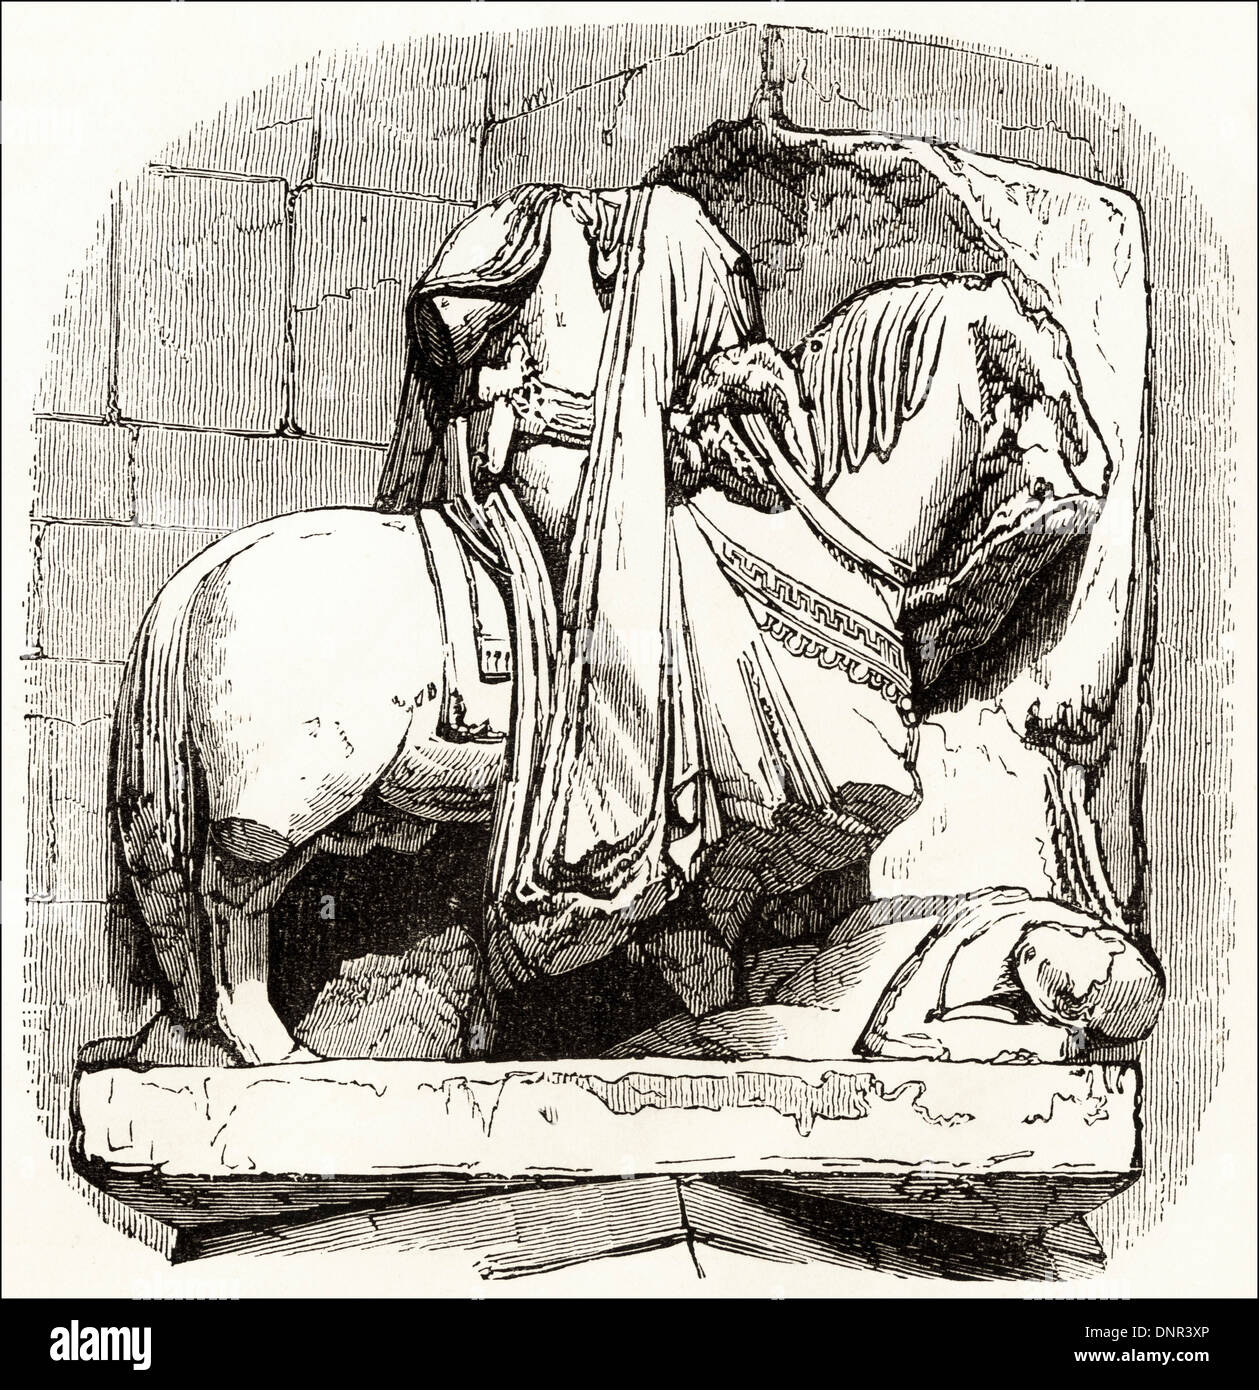 Statue de Guillaume Le Conquérant à l'église de St Etienne ( Stephen ) à Caen Normandie France. Circa 1845 gravure sur bois de l'époque victorienne. Banque D'Images